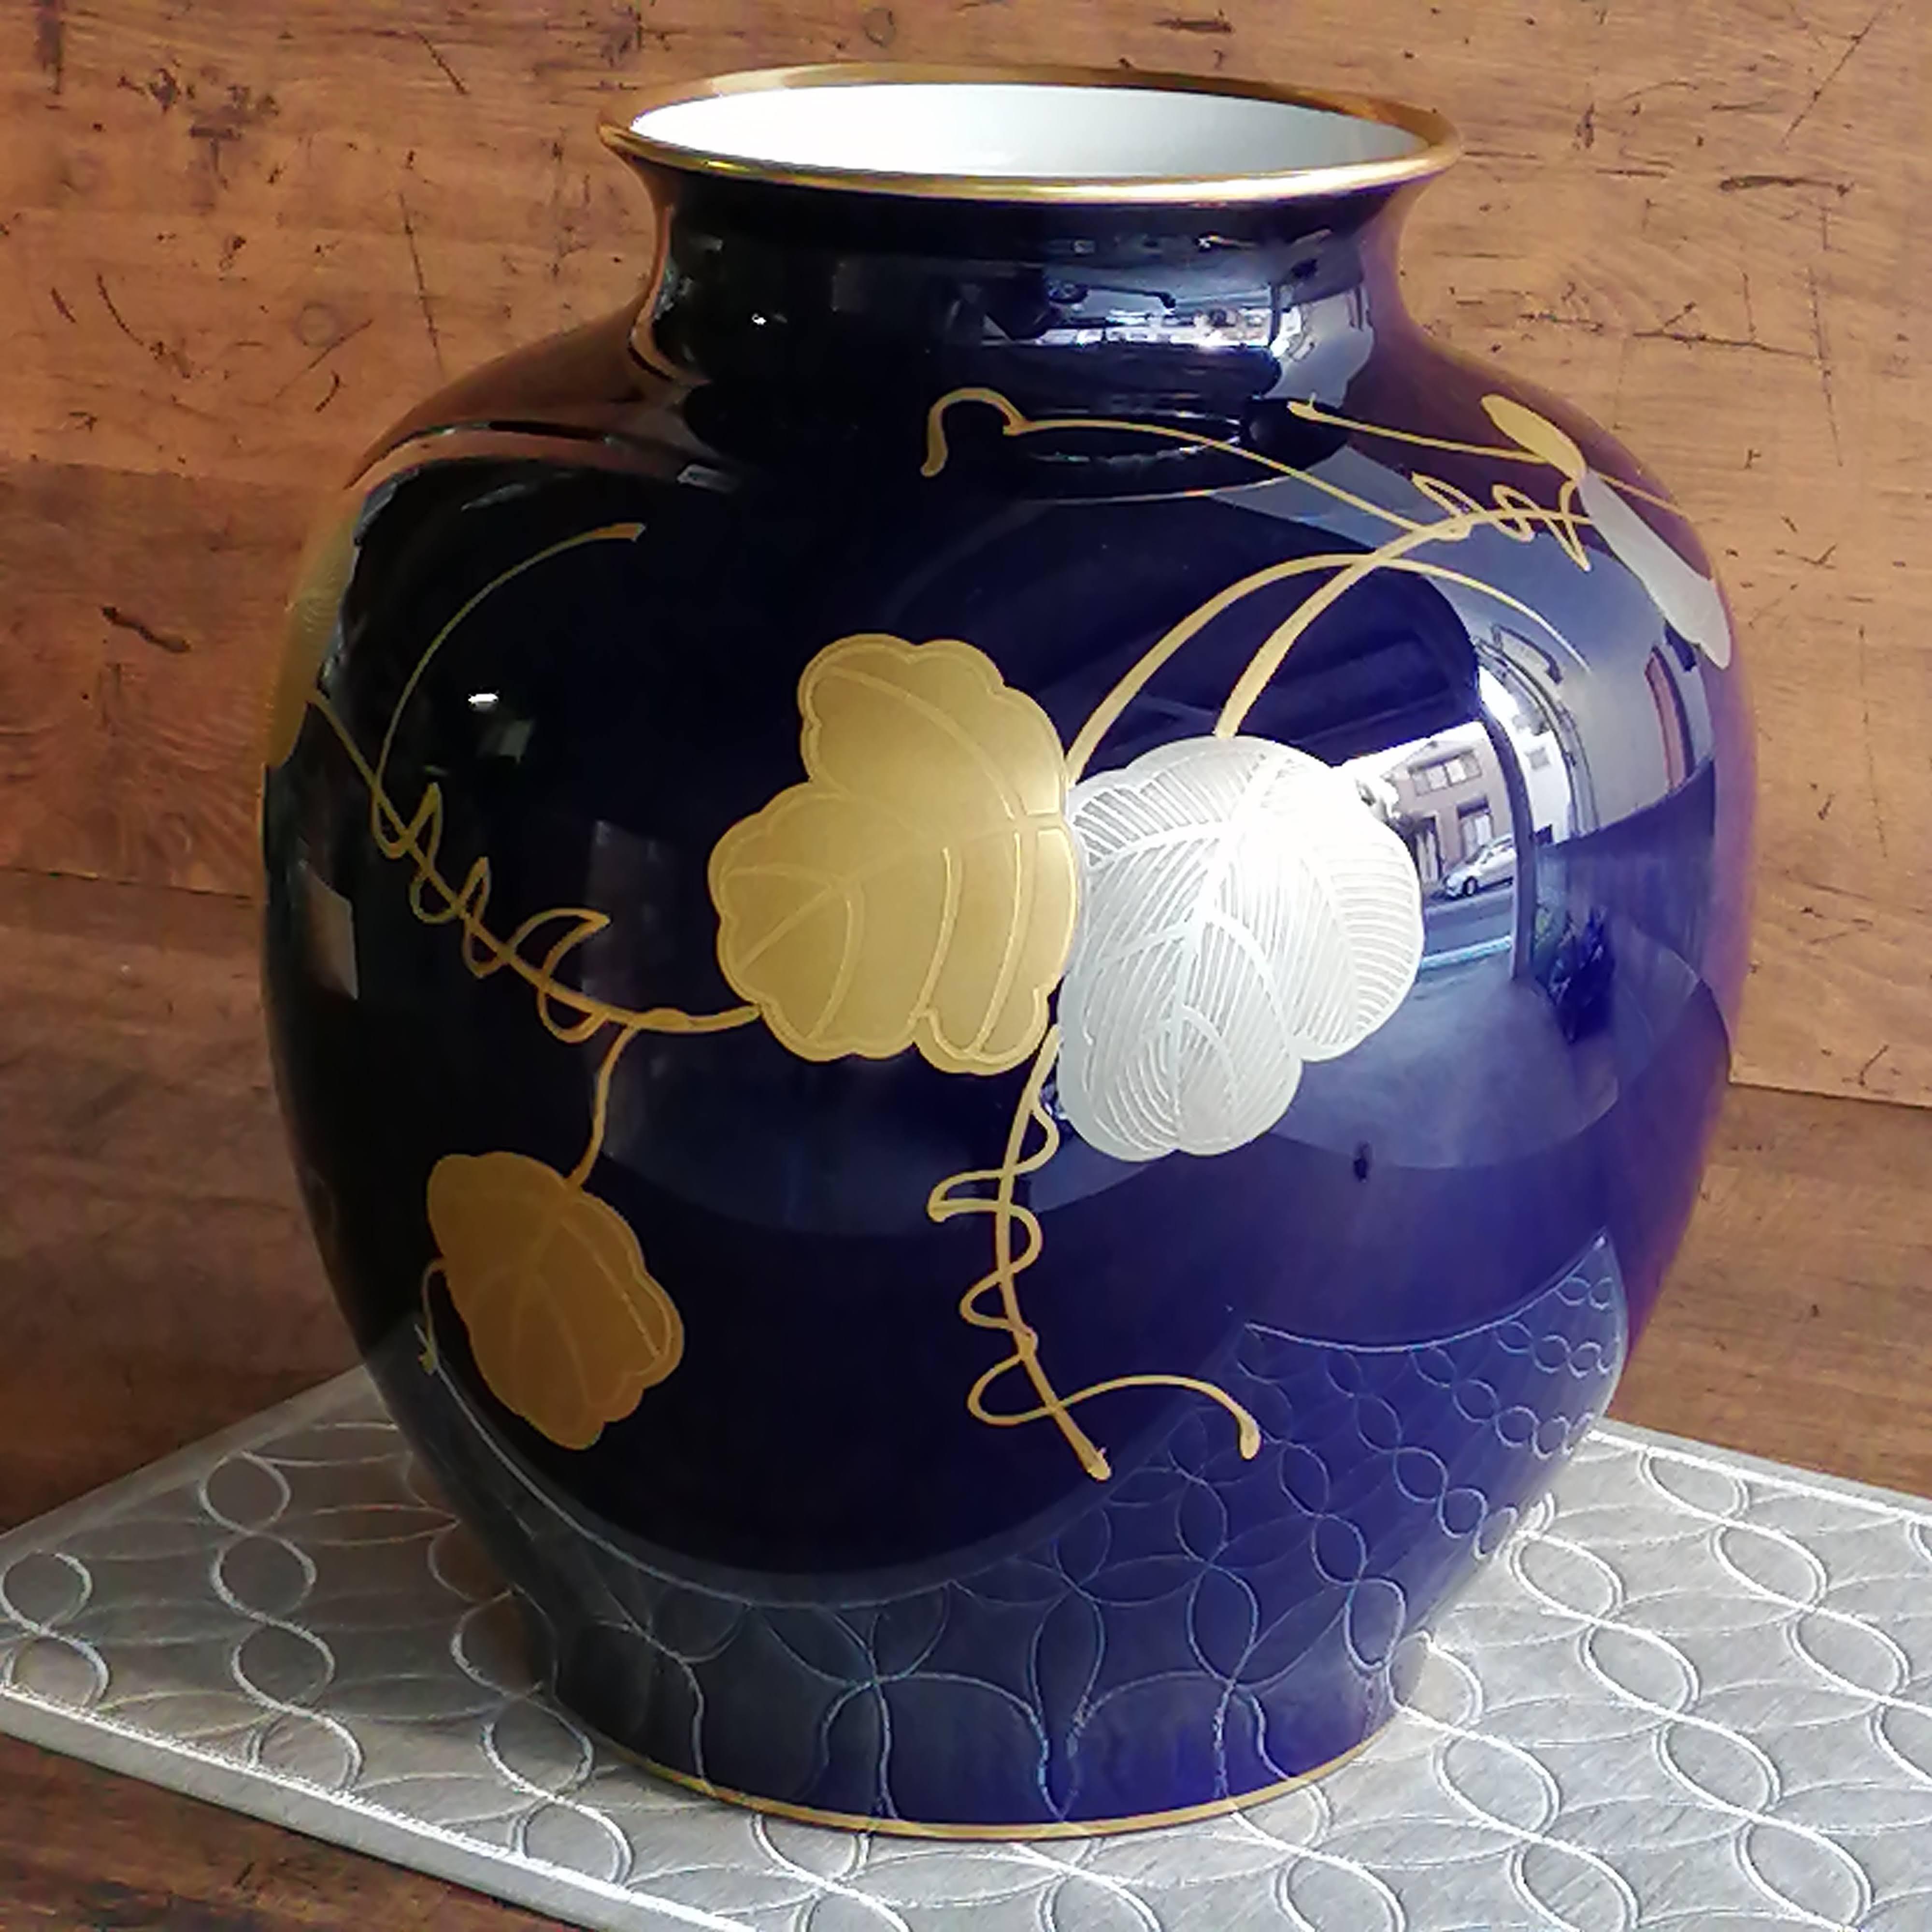 皇室御用達 大倉陶園 JB 瑠璃金蝕葡萄 29cm 花器 花瓶 磁器 高級 - 花瓶